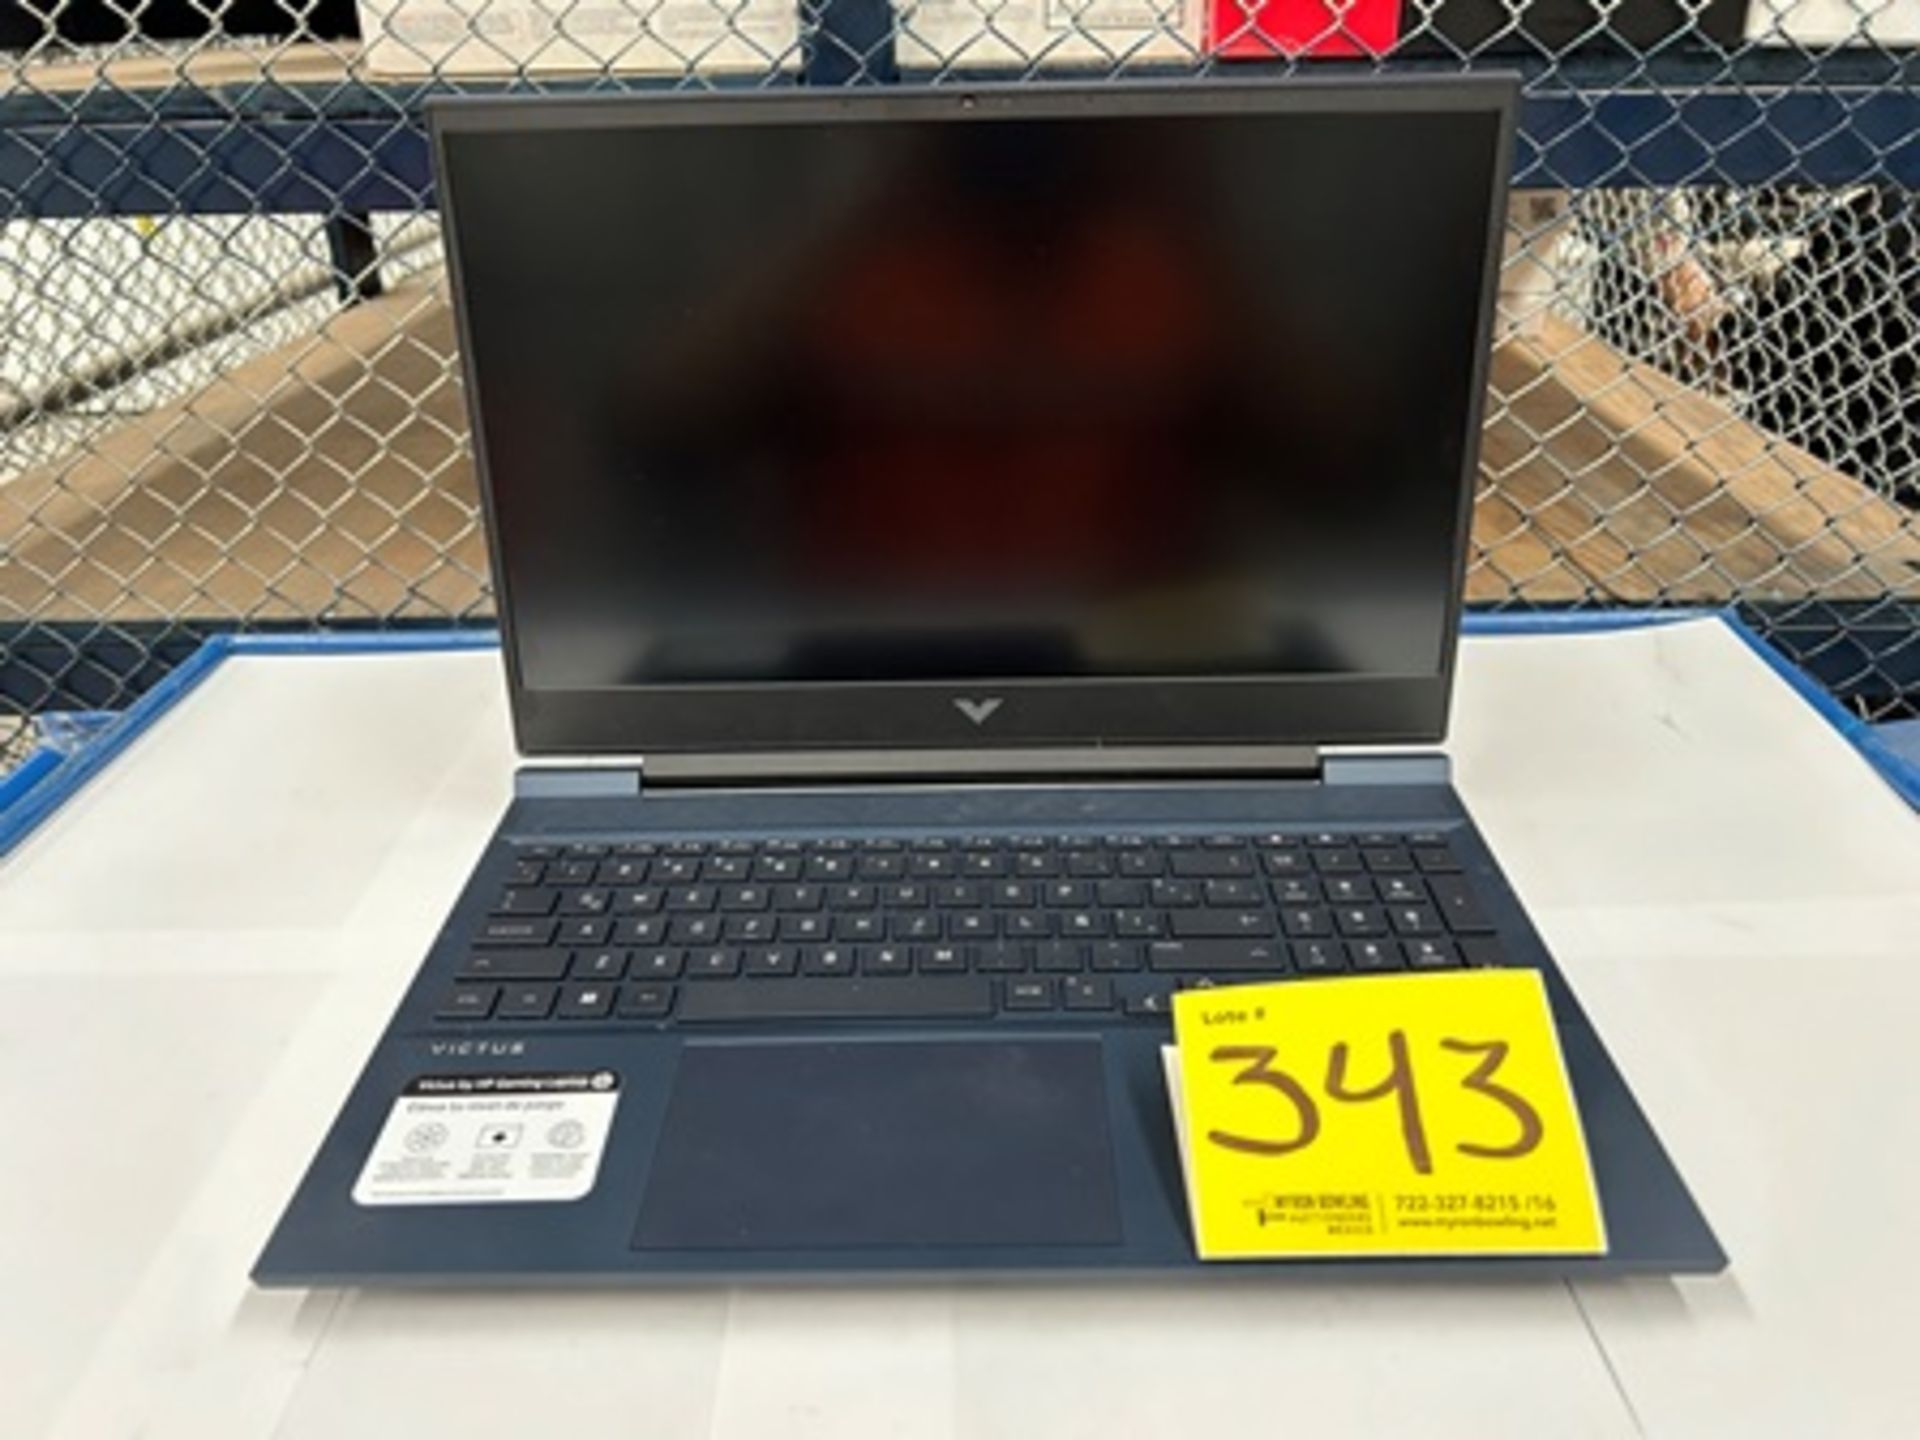 Laptop Marca HP, Modelo 16-d0533la, Serie 209XMQ, Color AZUL MARINO, CORE i7, 16GB en RAM, 1 TB de